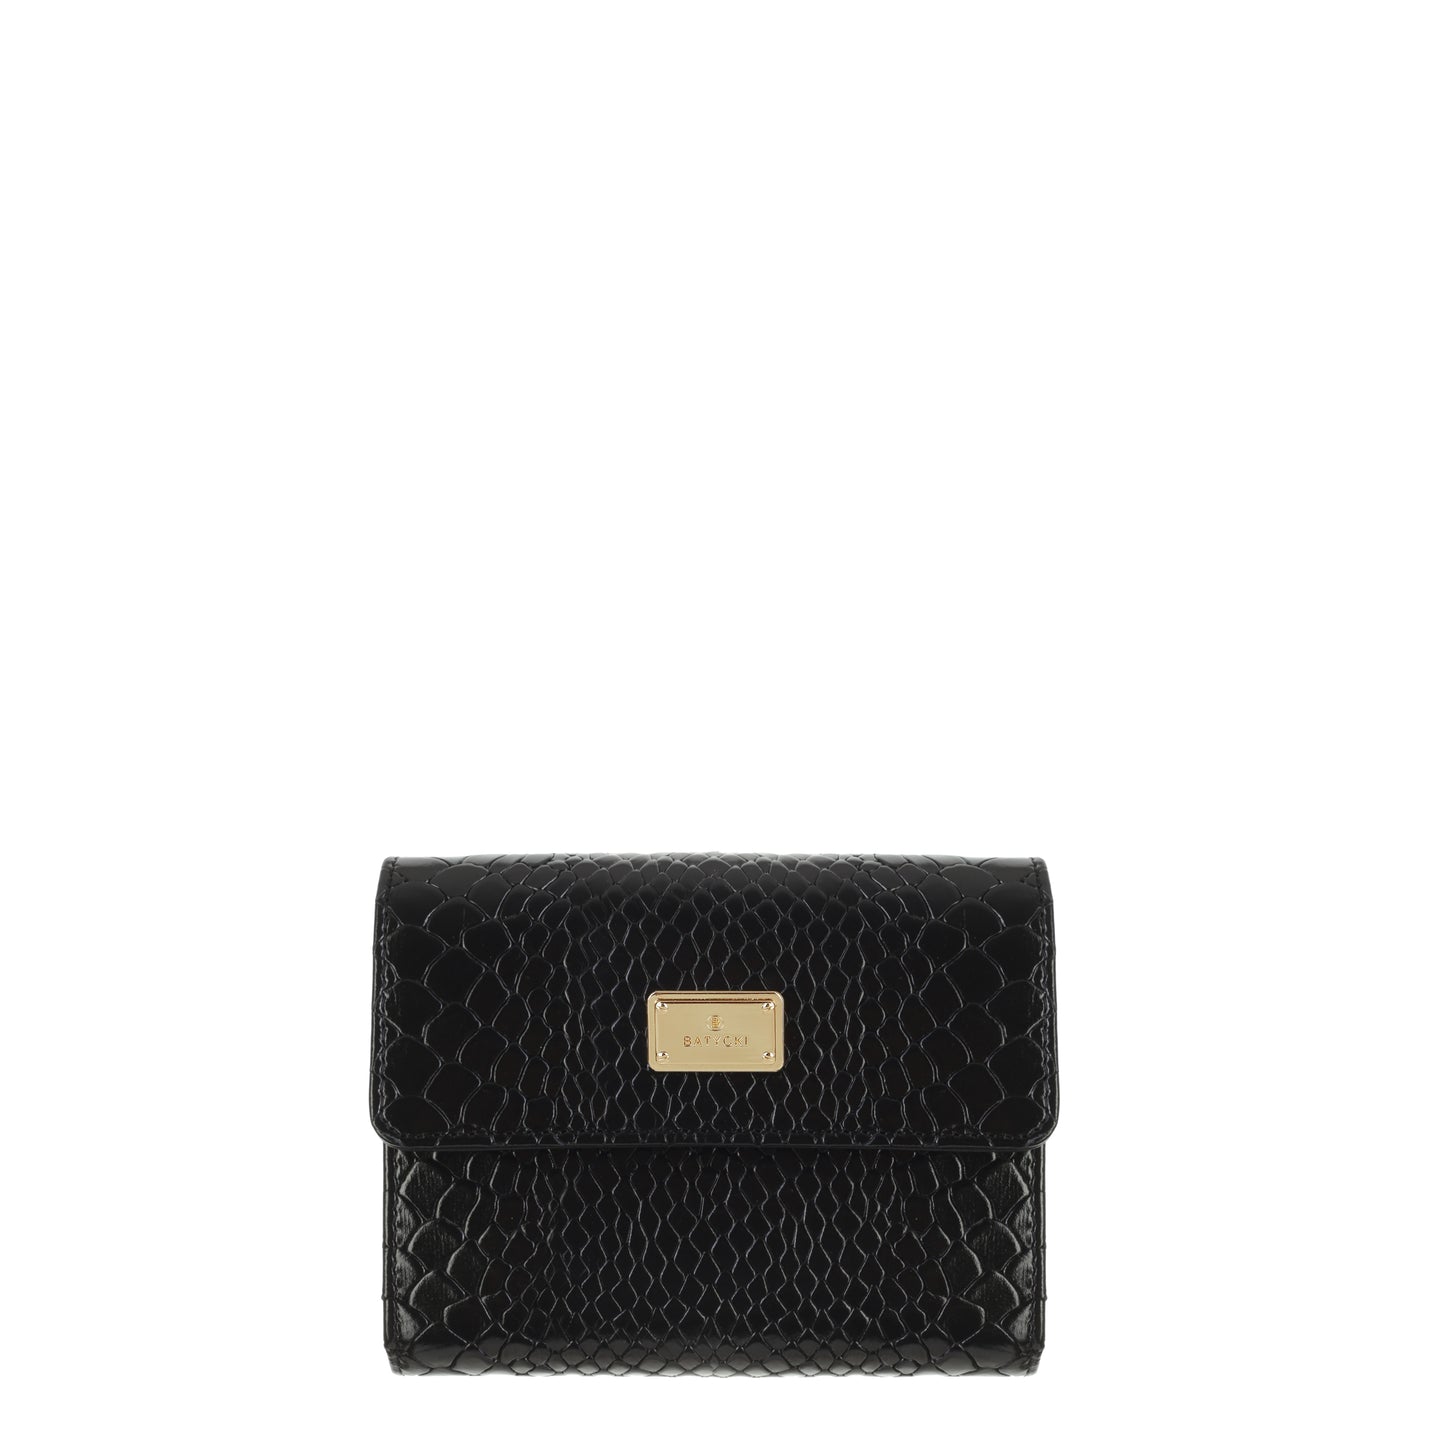 BLACK women's leather wallet